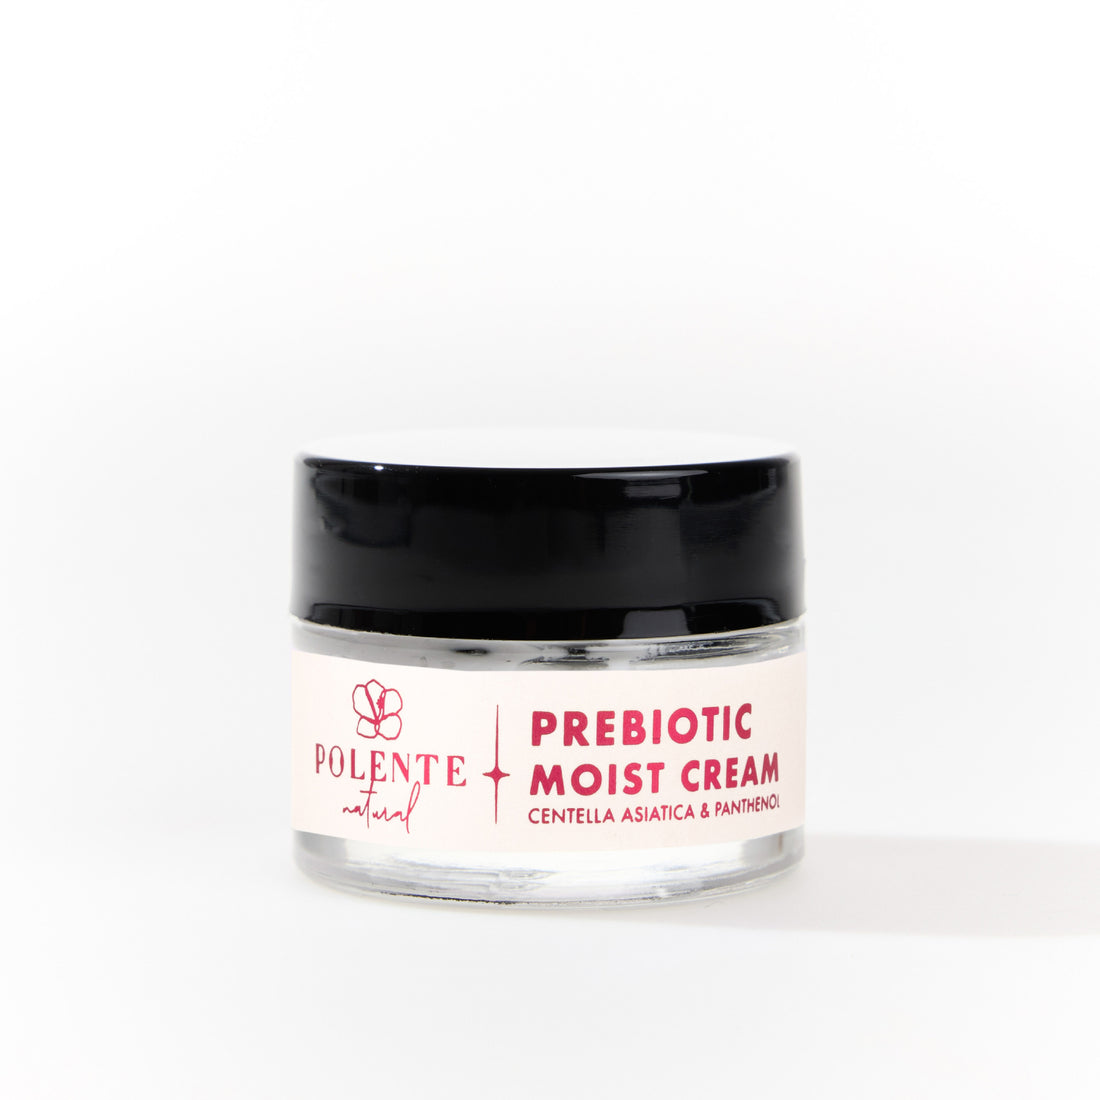 Prebiotic Moist Cream - Cica &amp; Panthenol Yoğun Nemlendirici Prebiyotik Yüz Kremi